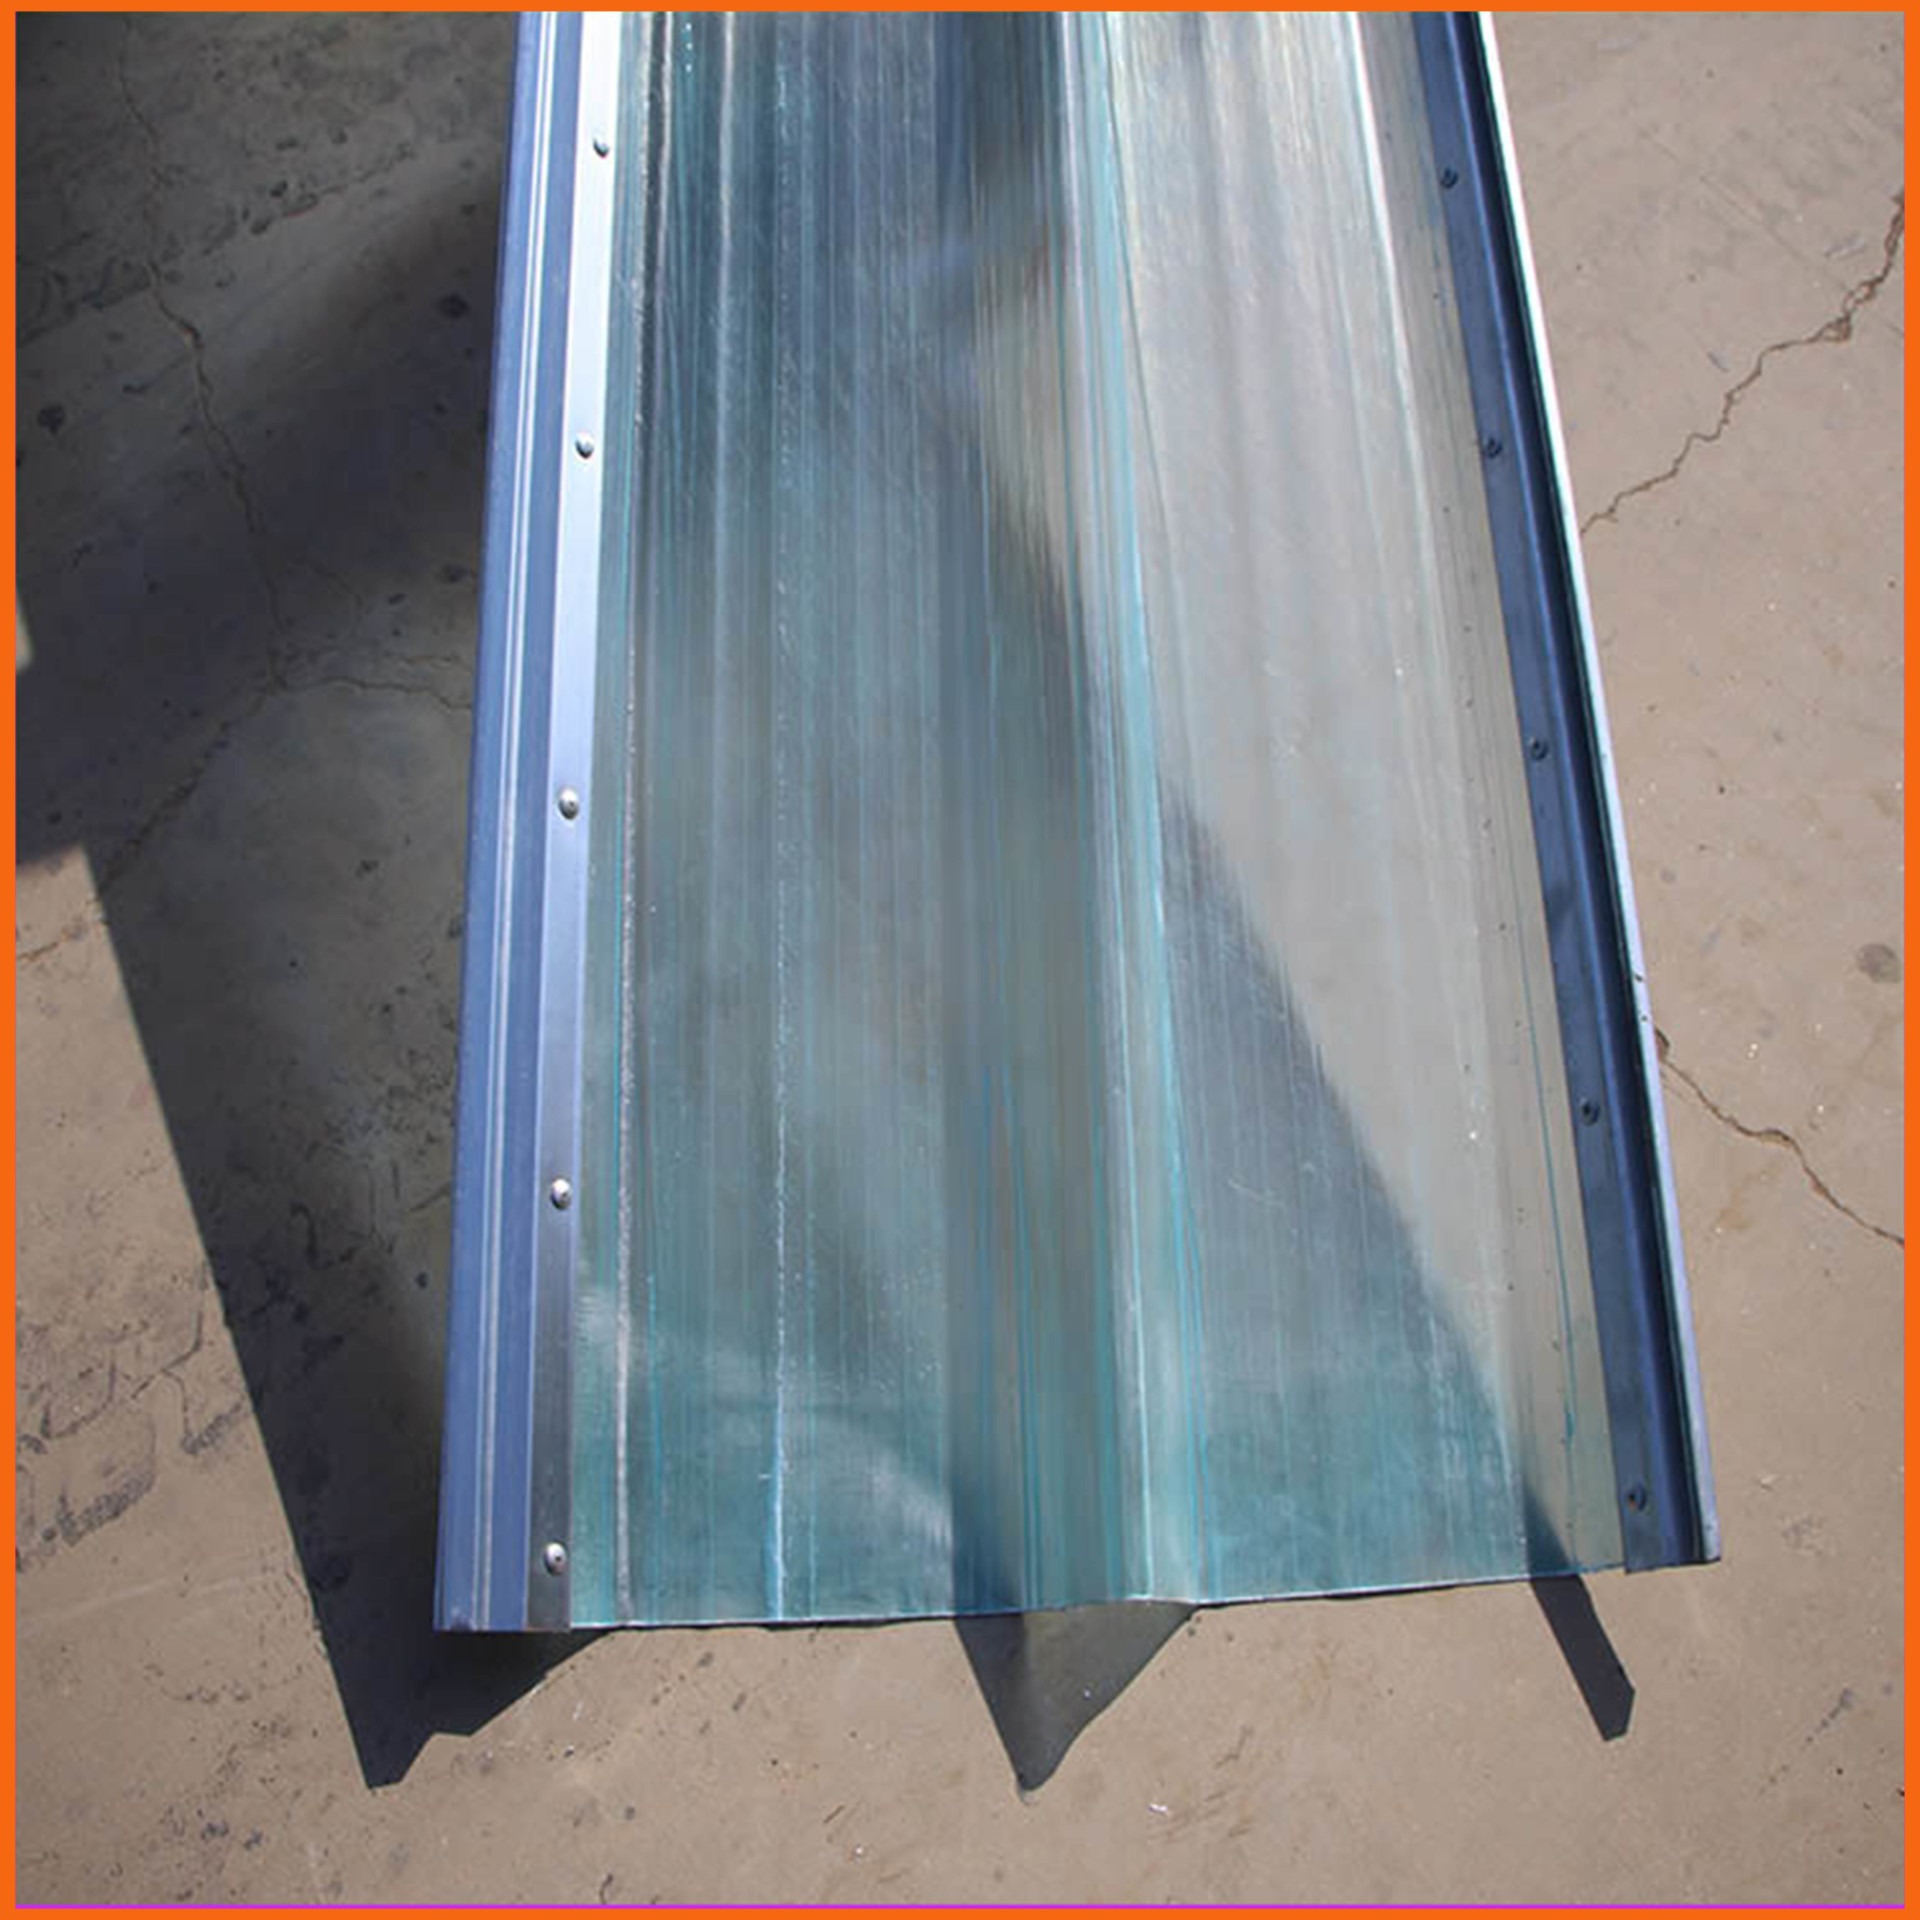 840型镀铝锌铁边采光带 海口FPR透明采光瓦 聚酯玻璃钢采光板生产厂家图片